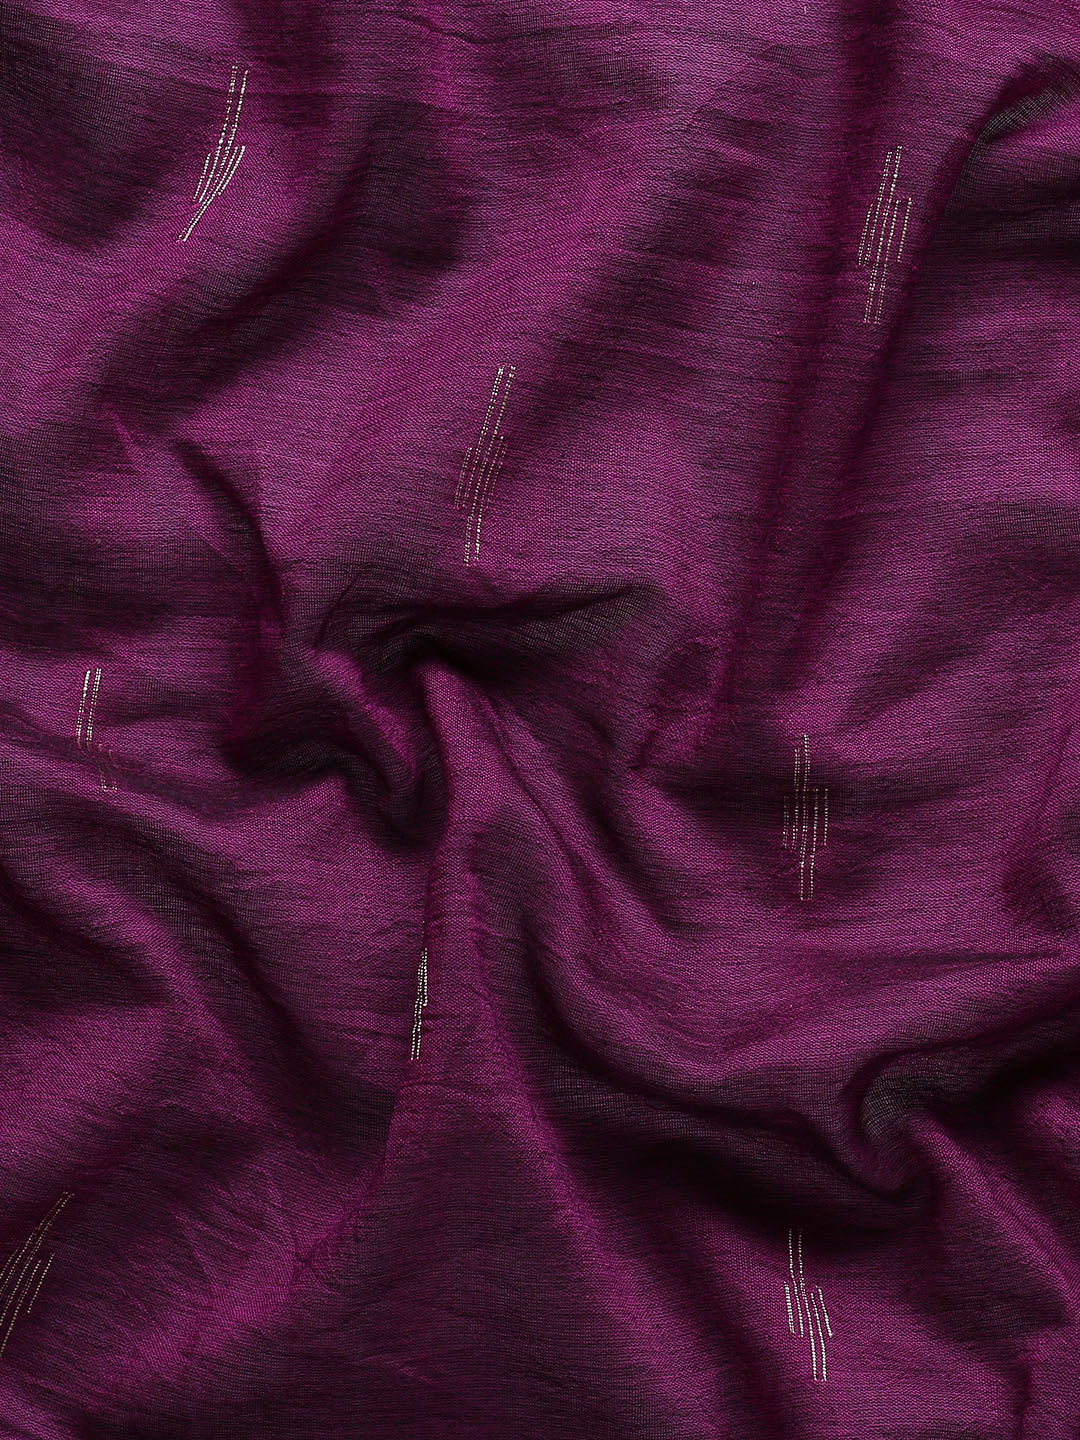 Purple Jamdani Cotton Saree Without Blouse